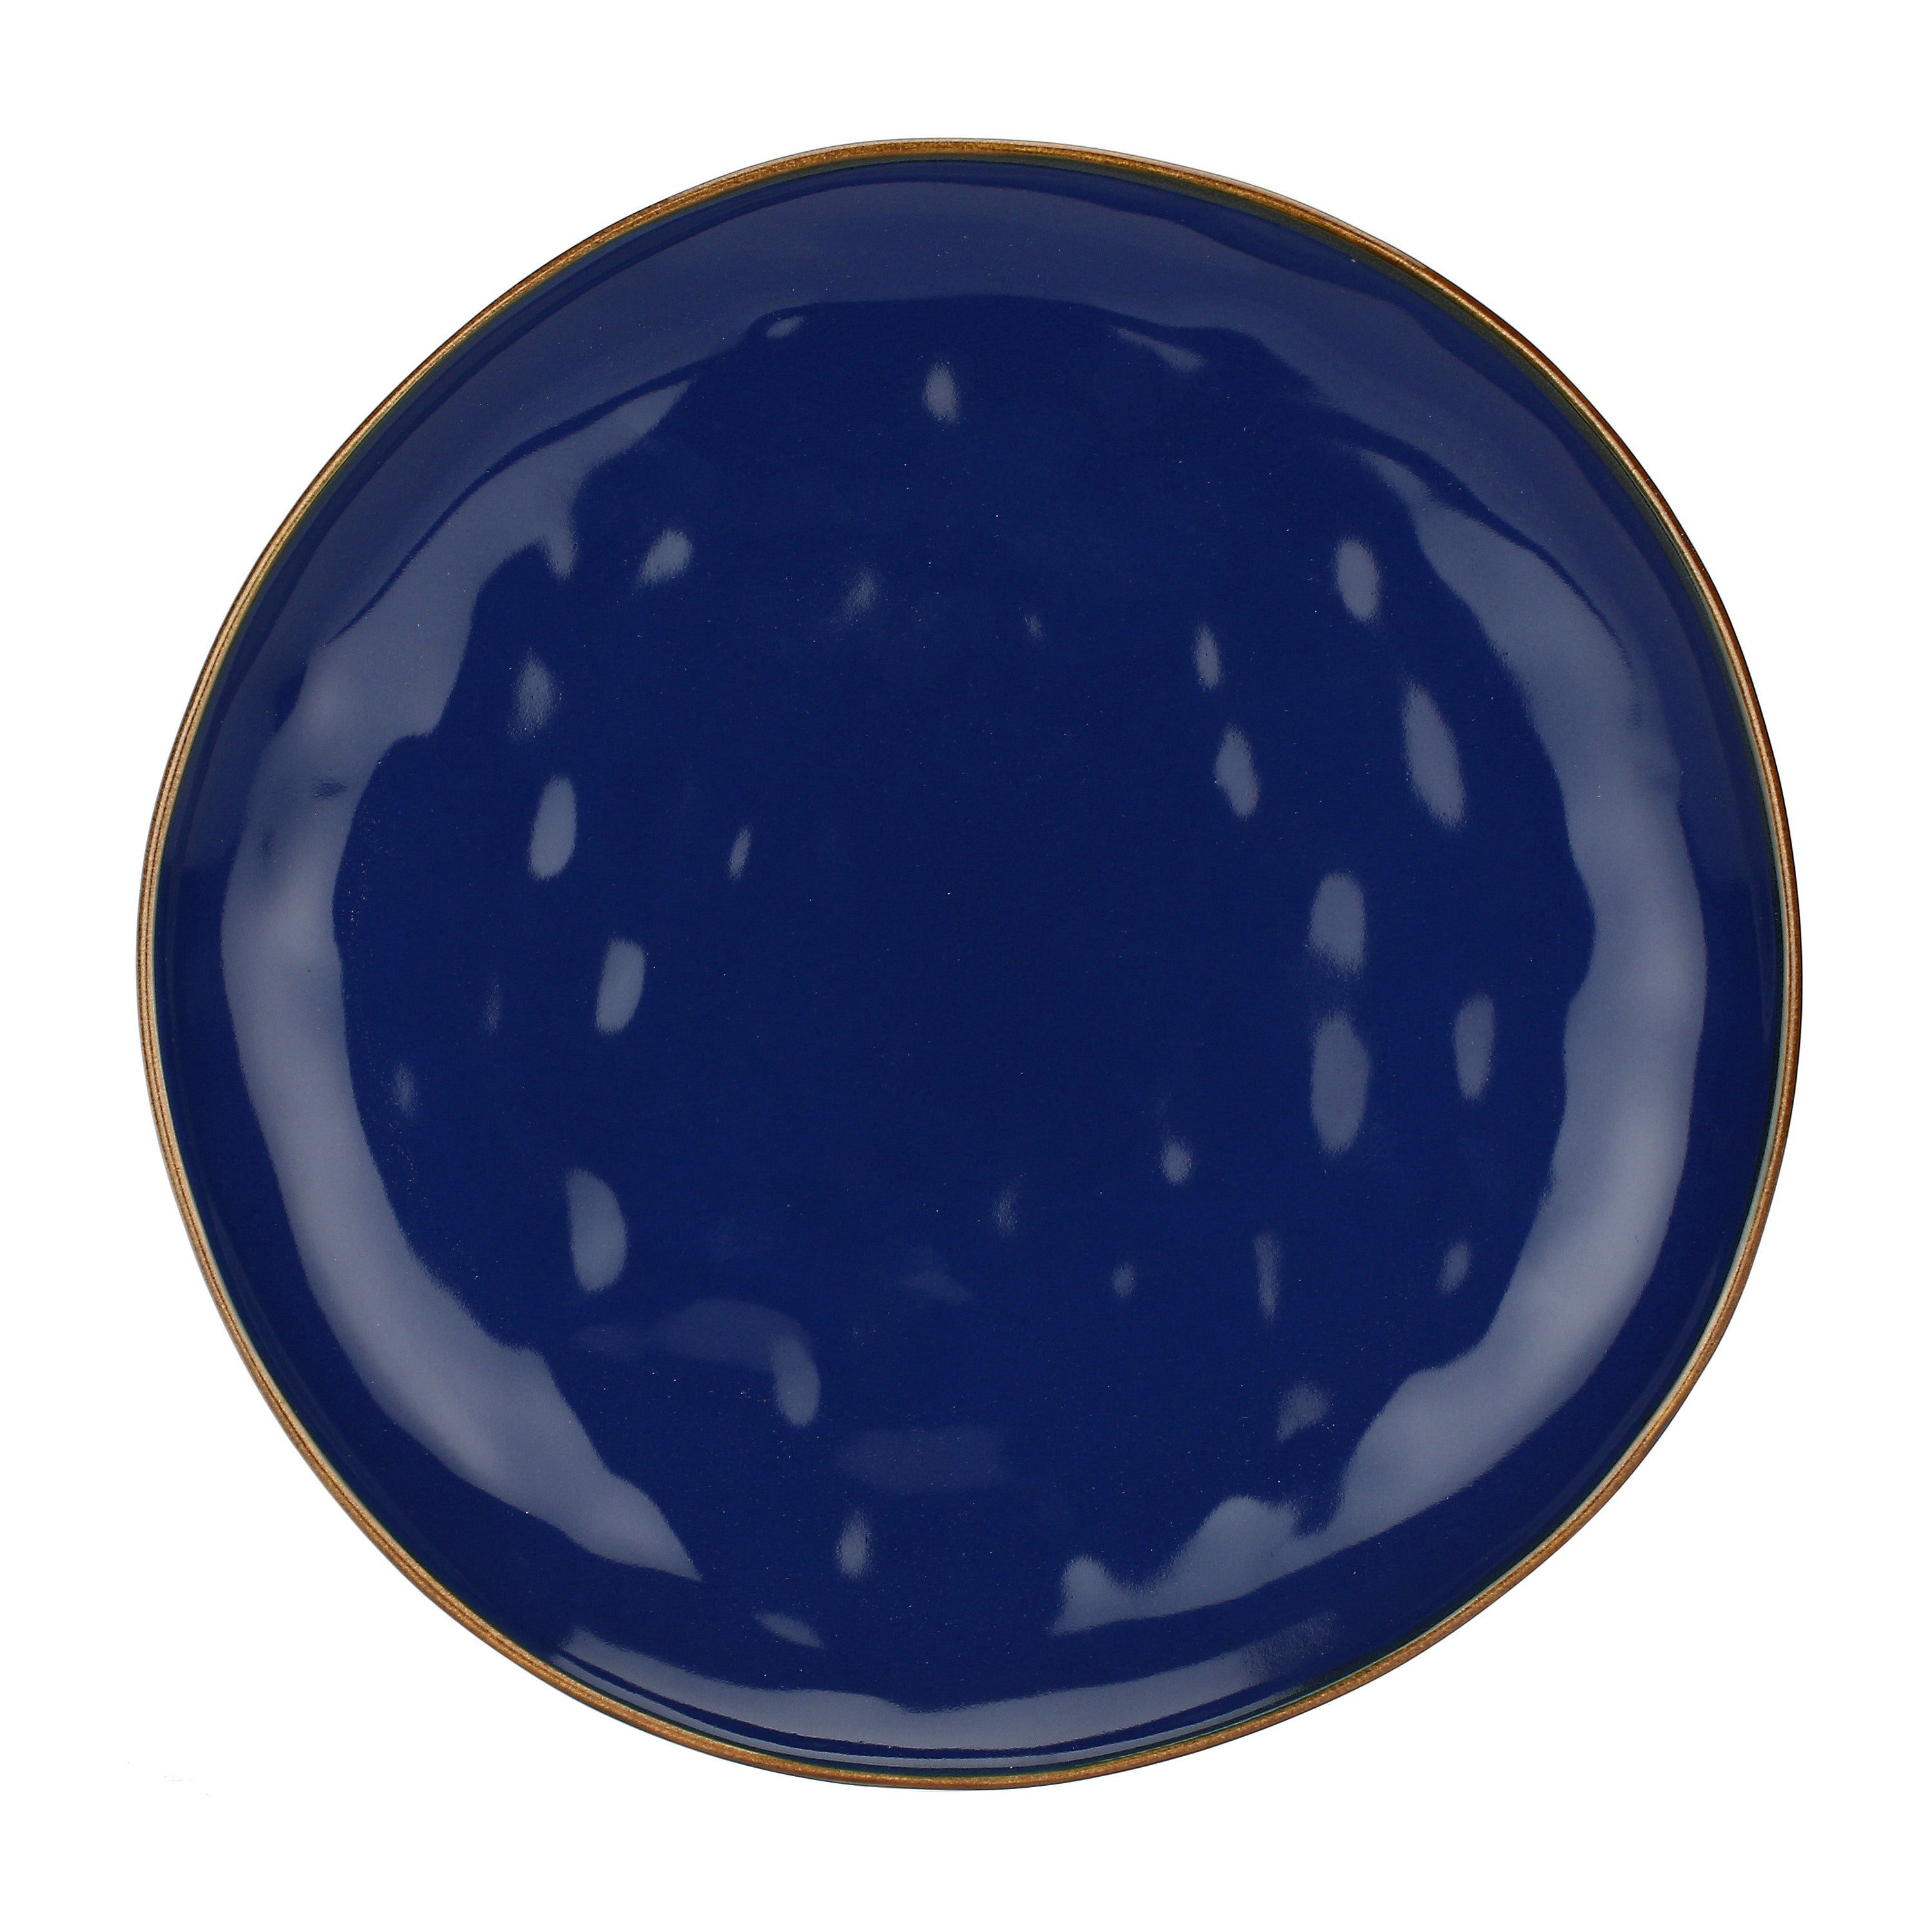 immagine-1-thun-spa-concerto-blu-cobalto-piatto-paino-d-27-cm-ean-8021918042854